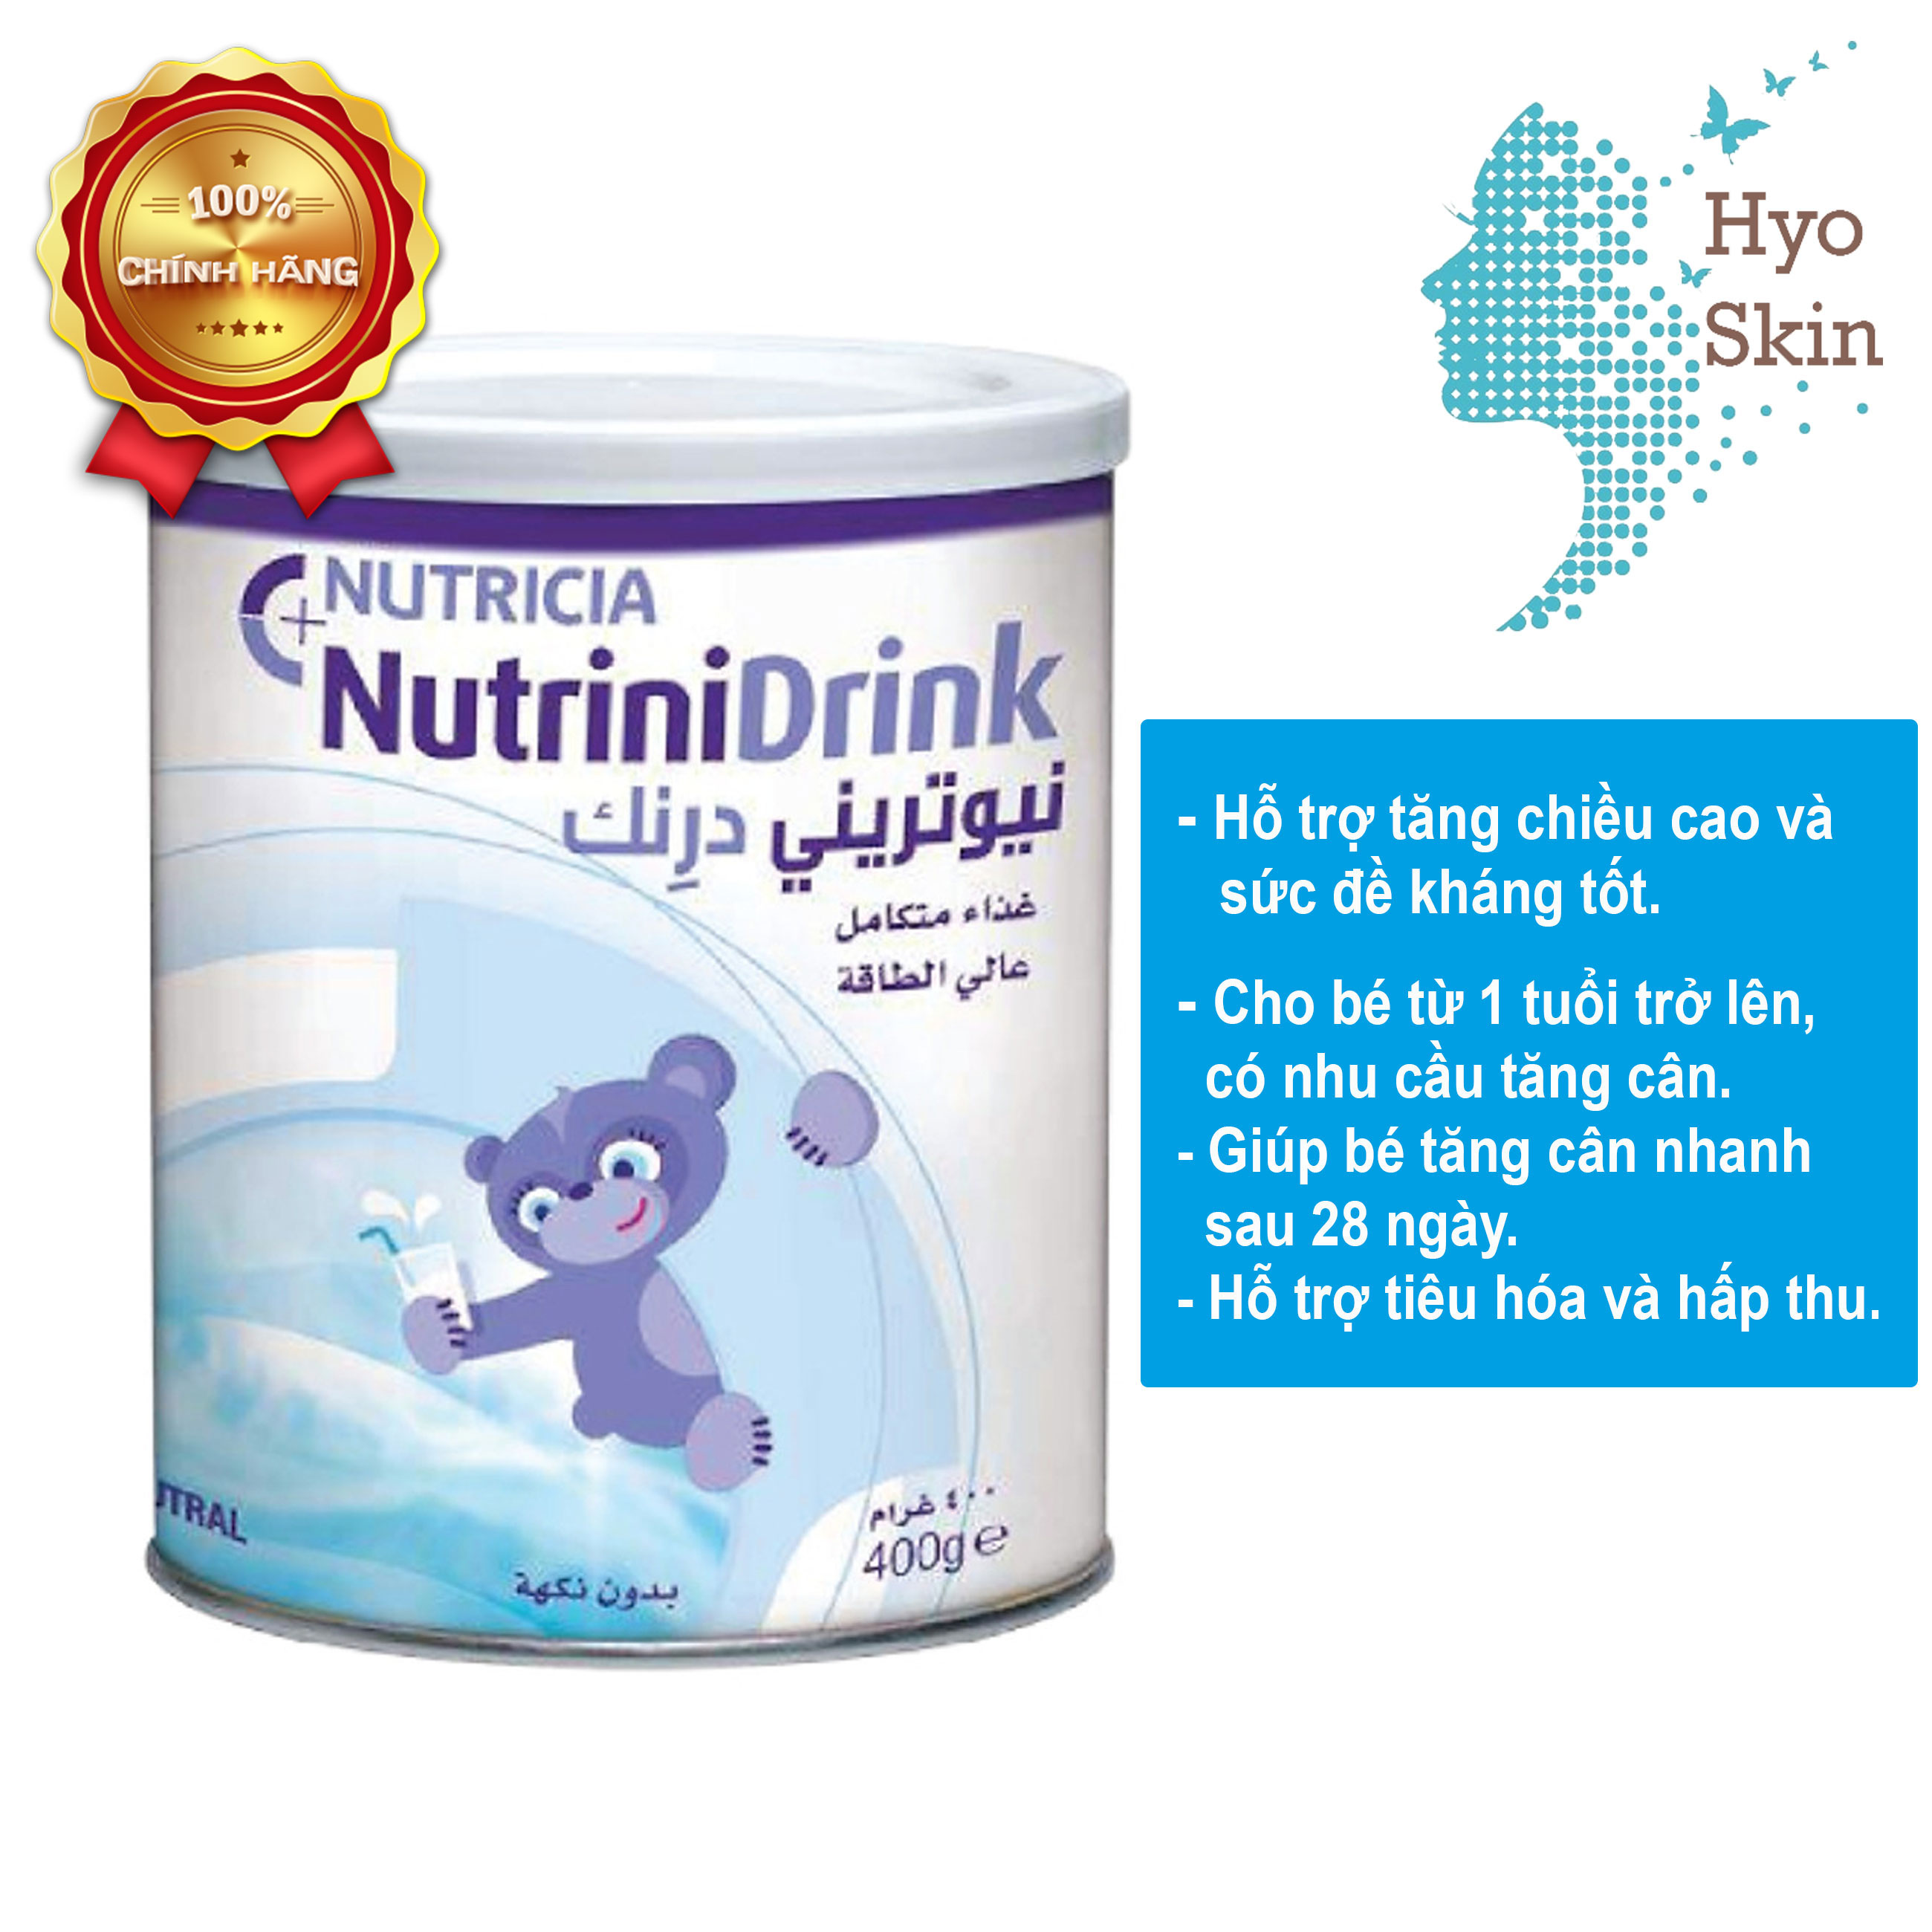 CHÍNH HÃNG Sữa Bột Nutrinidrink Powder Neutral & Vanilla 400g